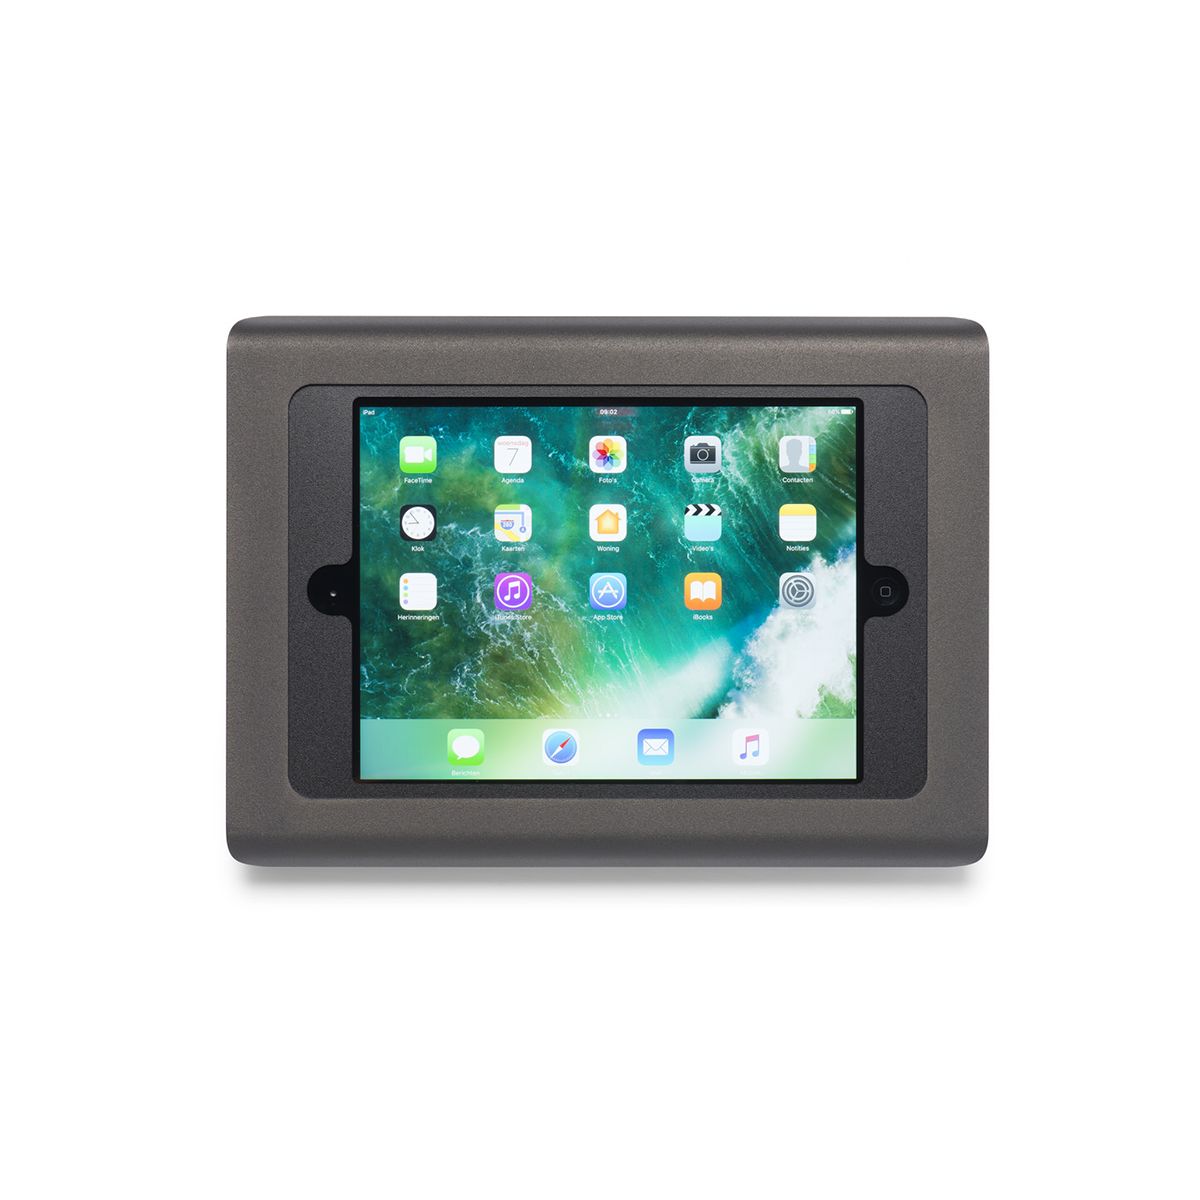 Gewoon overlopen Inpakken bus Tabdoq iPad wandhouder voor iPad Mini 4/5